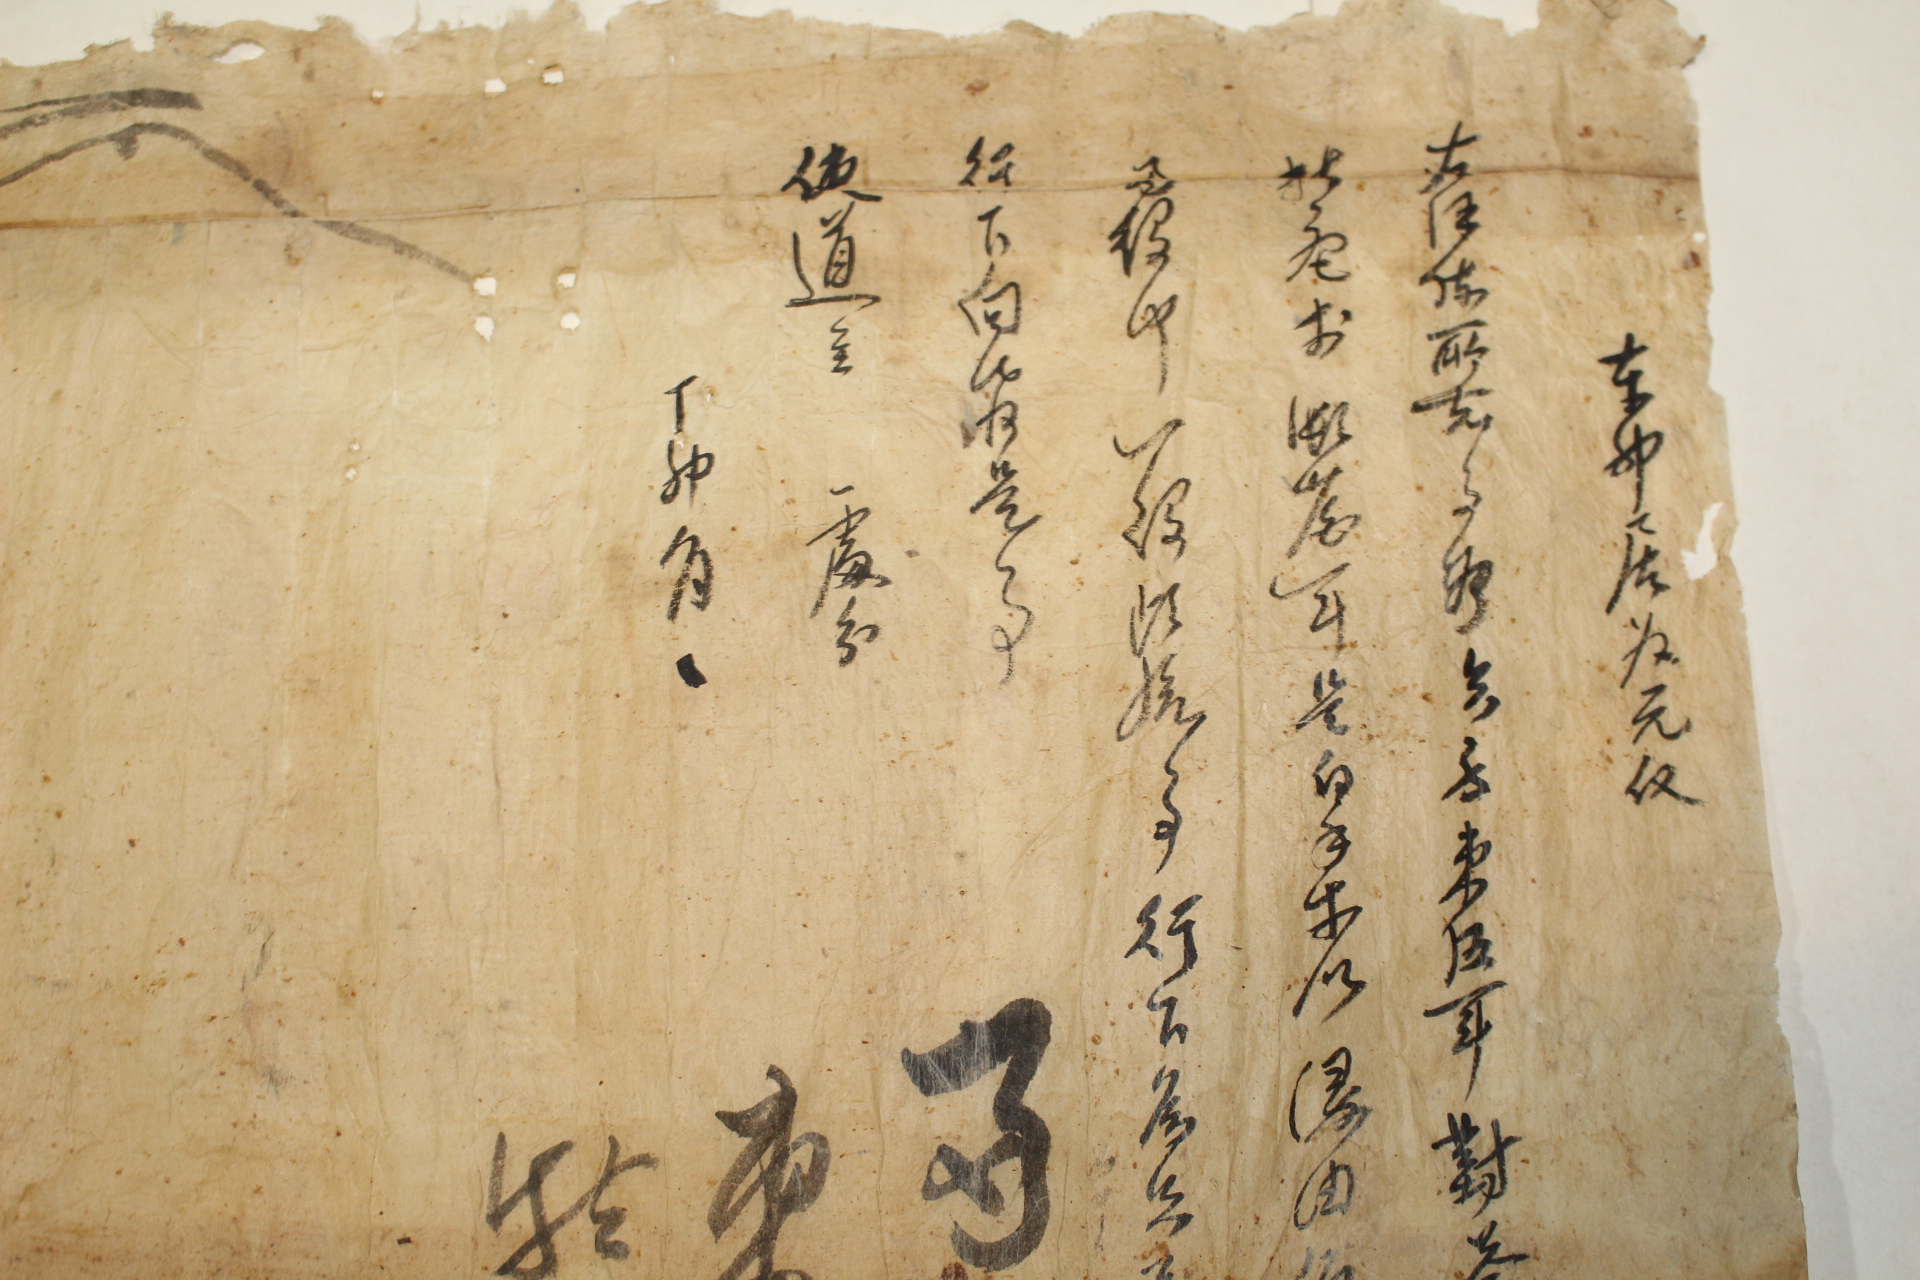 조선시대 경평군(慶平君)문서외 수군관련문서 18장 일괄(추가사진)